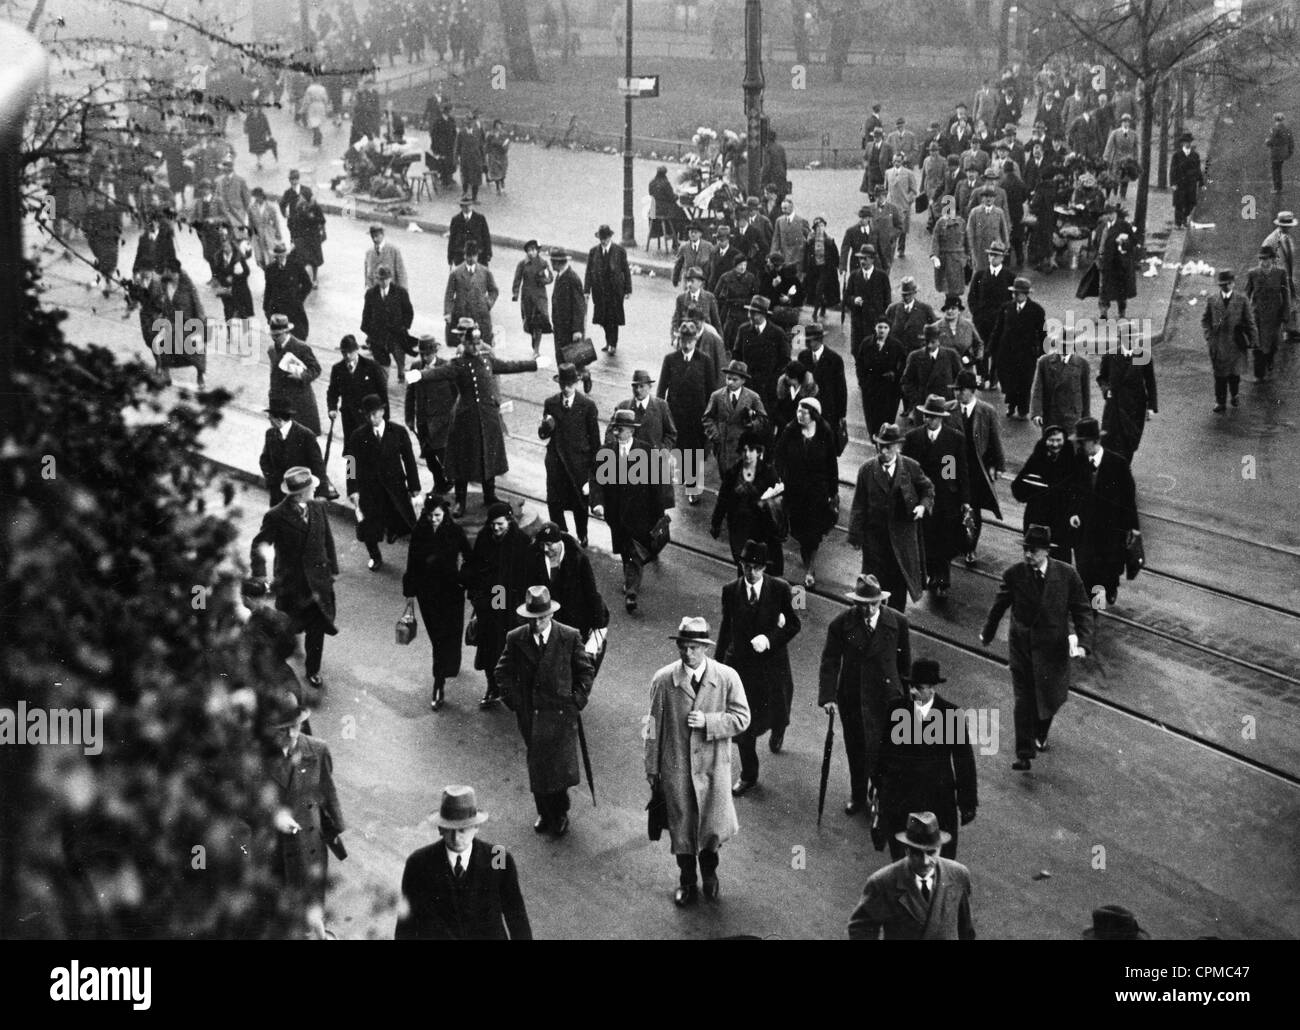 Les navetteurs à pied au cours de la BVG grèves des transports publics de Berlin, 3ème-7ème Novembre 1932 (photo n/b) Banque D'Images